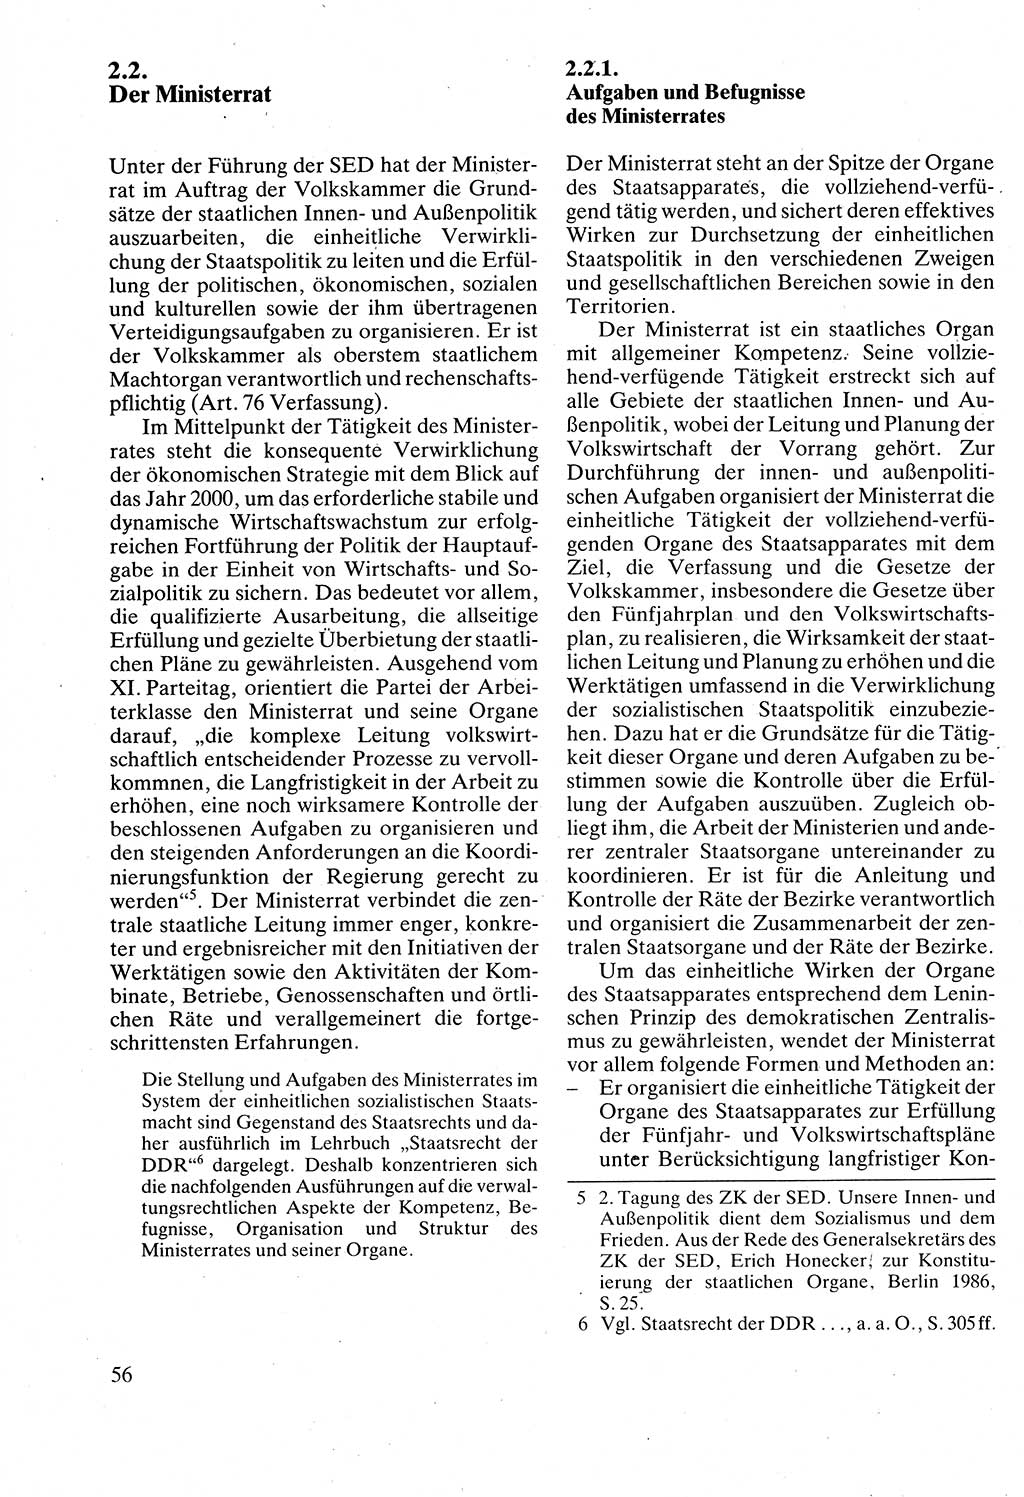 Verwaltungsrecht [Deutsche Demokratische Republik (DDR)], Lehrbuch 1988, Seite 56 (Verw.-R. DDR Lb. 1988, S. 56)